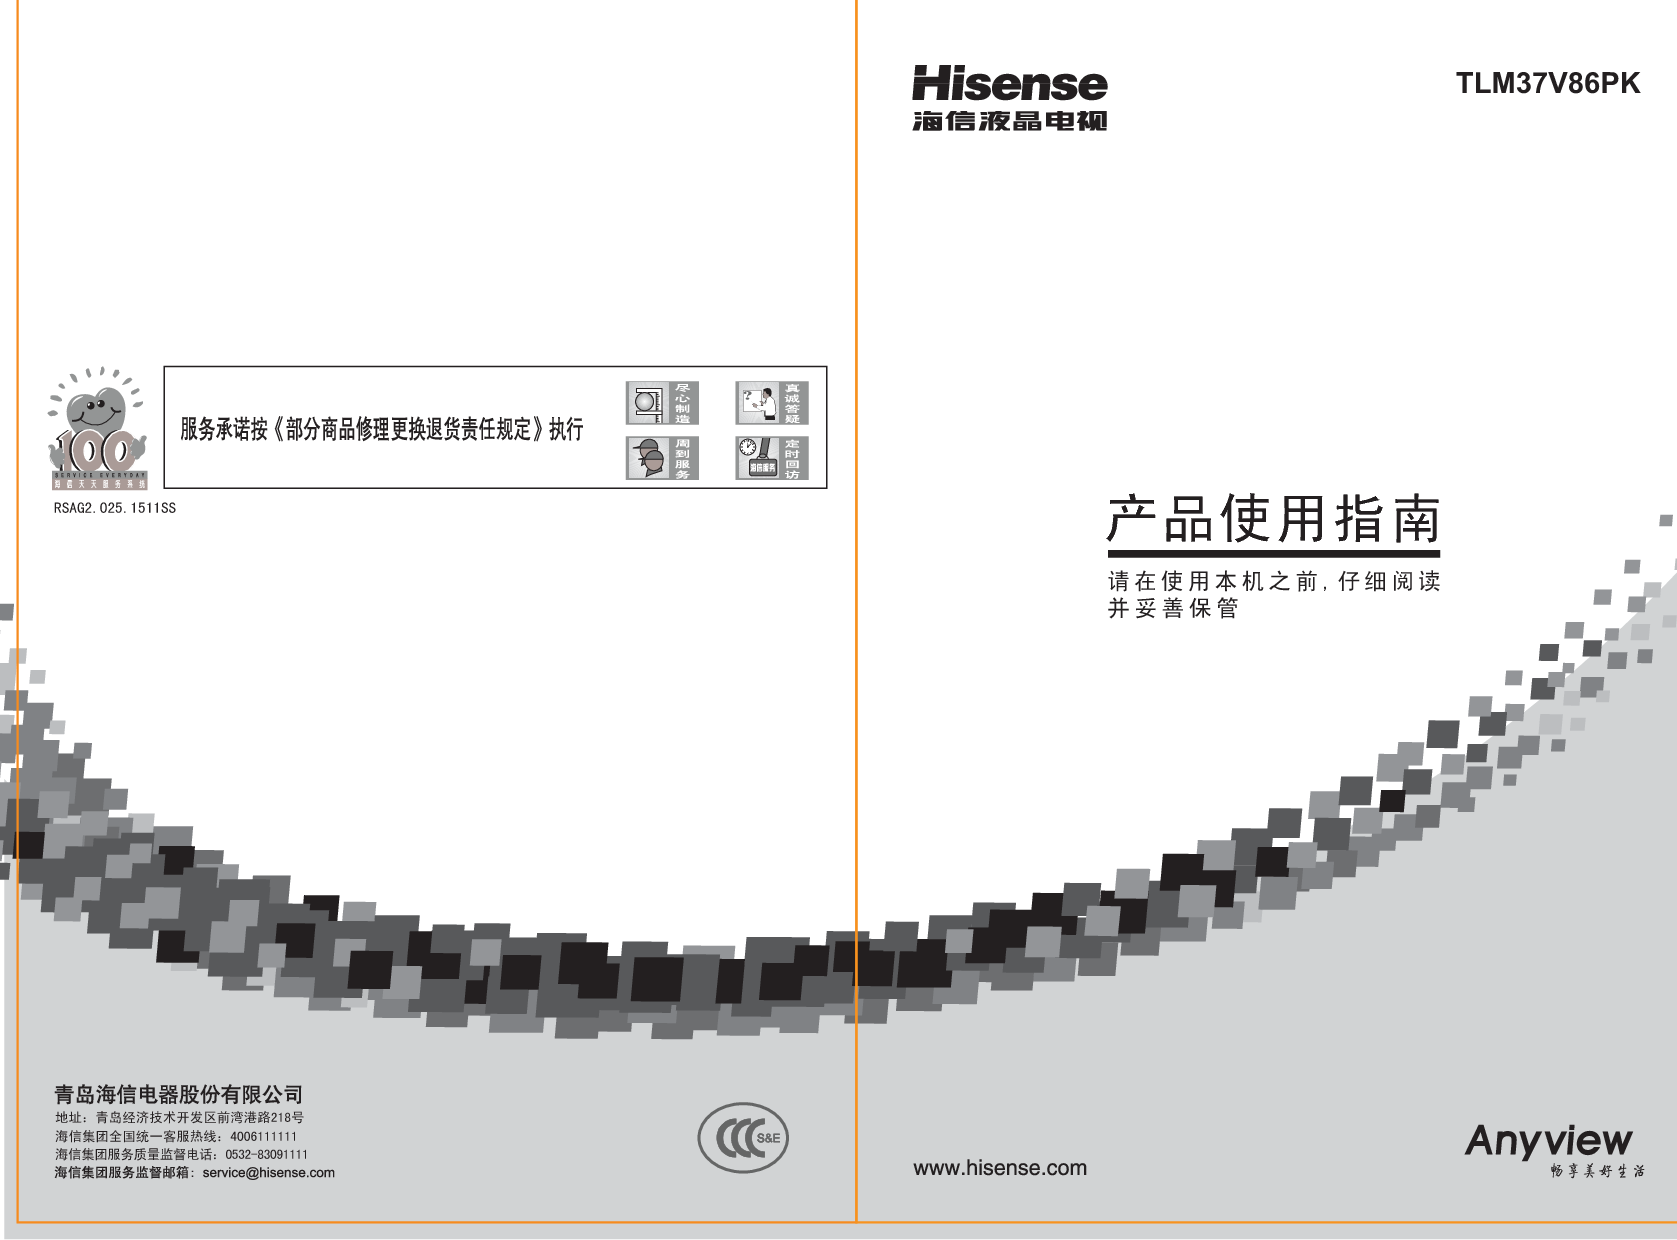 海信 Hisense TLM37V86PK 用户指南 封面